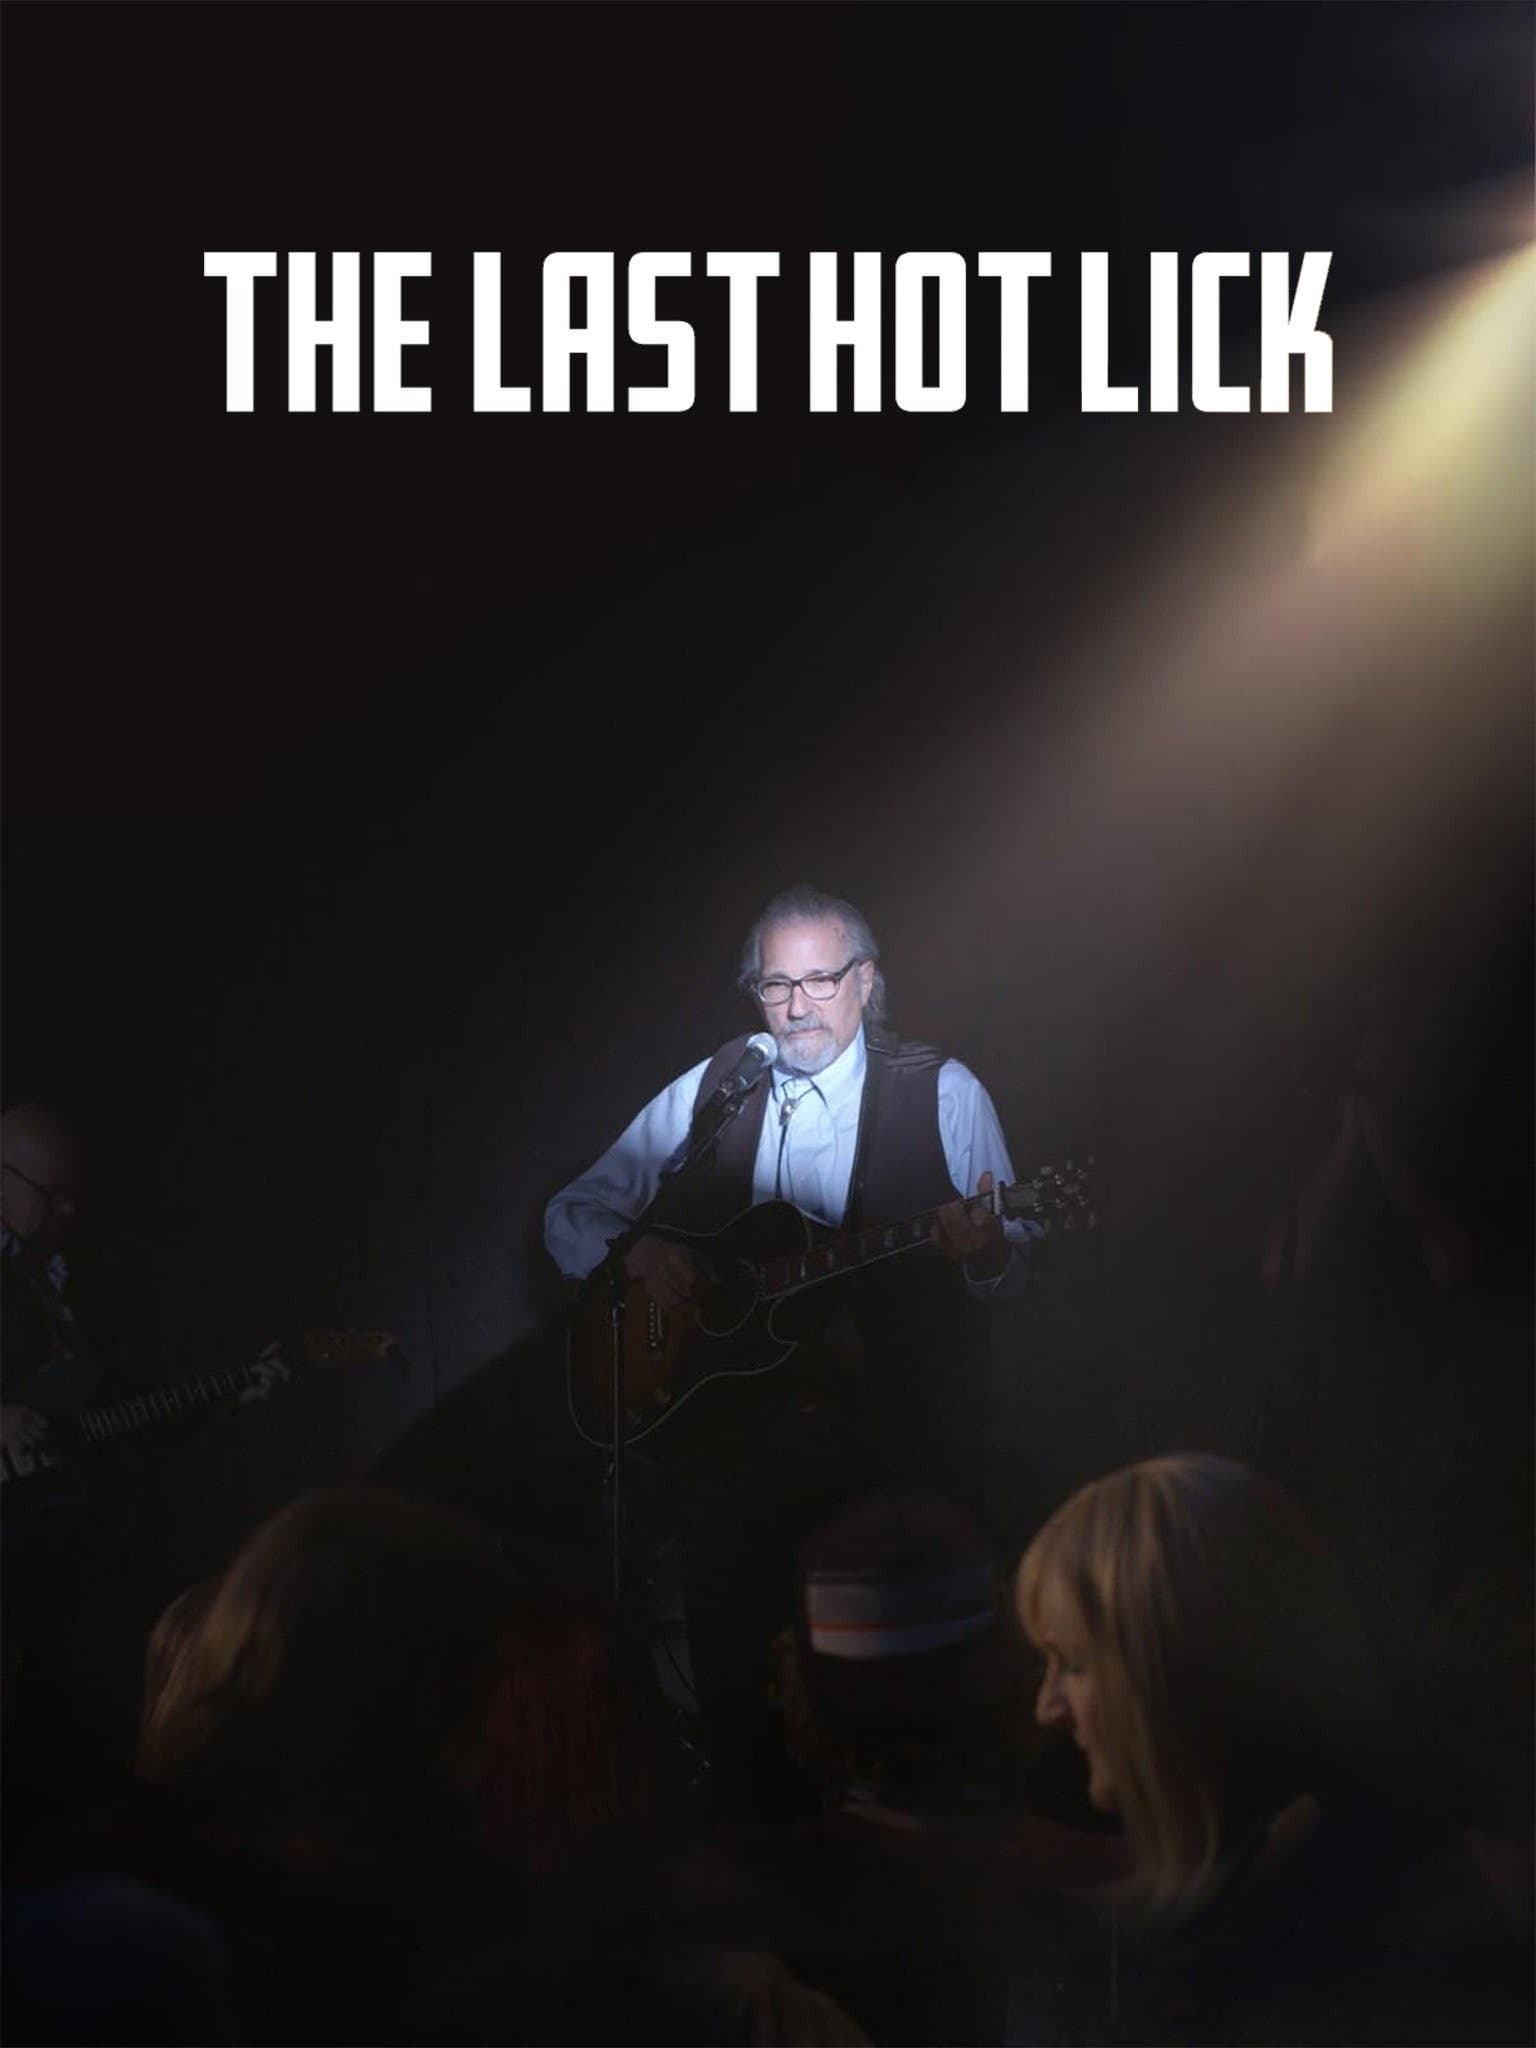 The Last Hot Lick